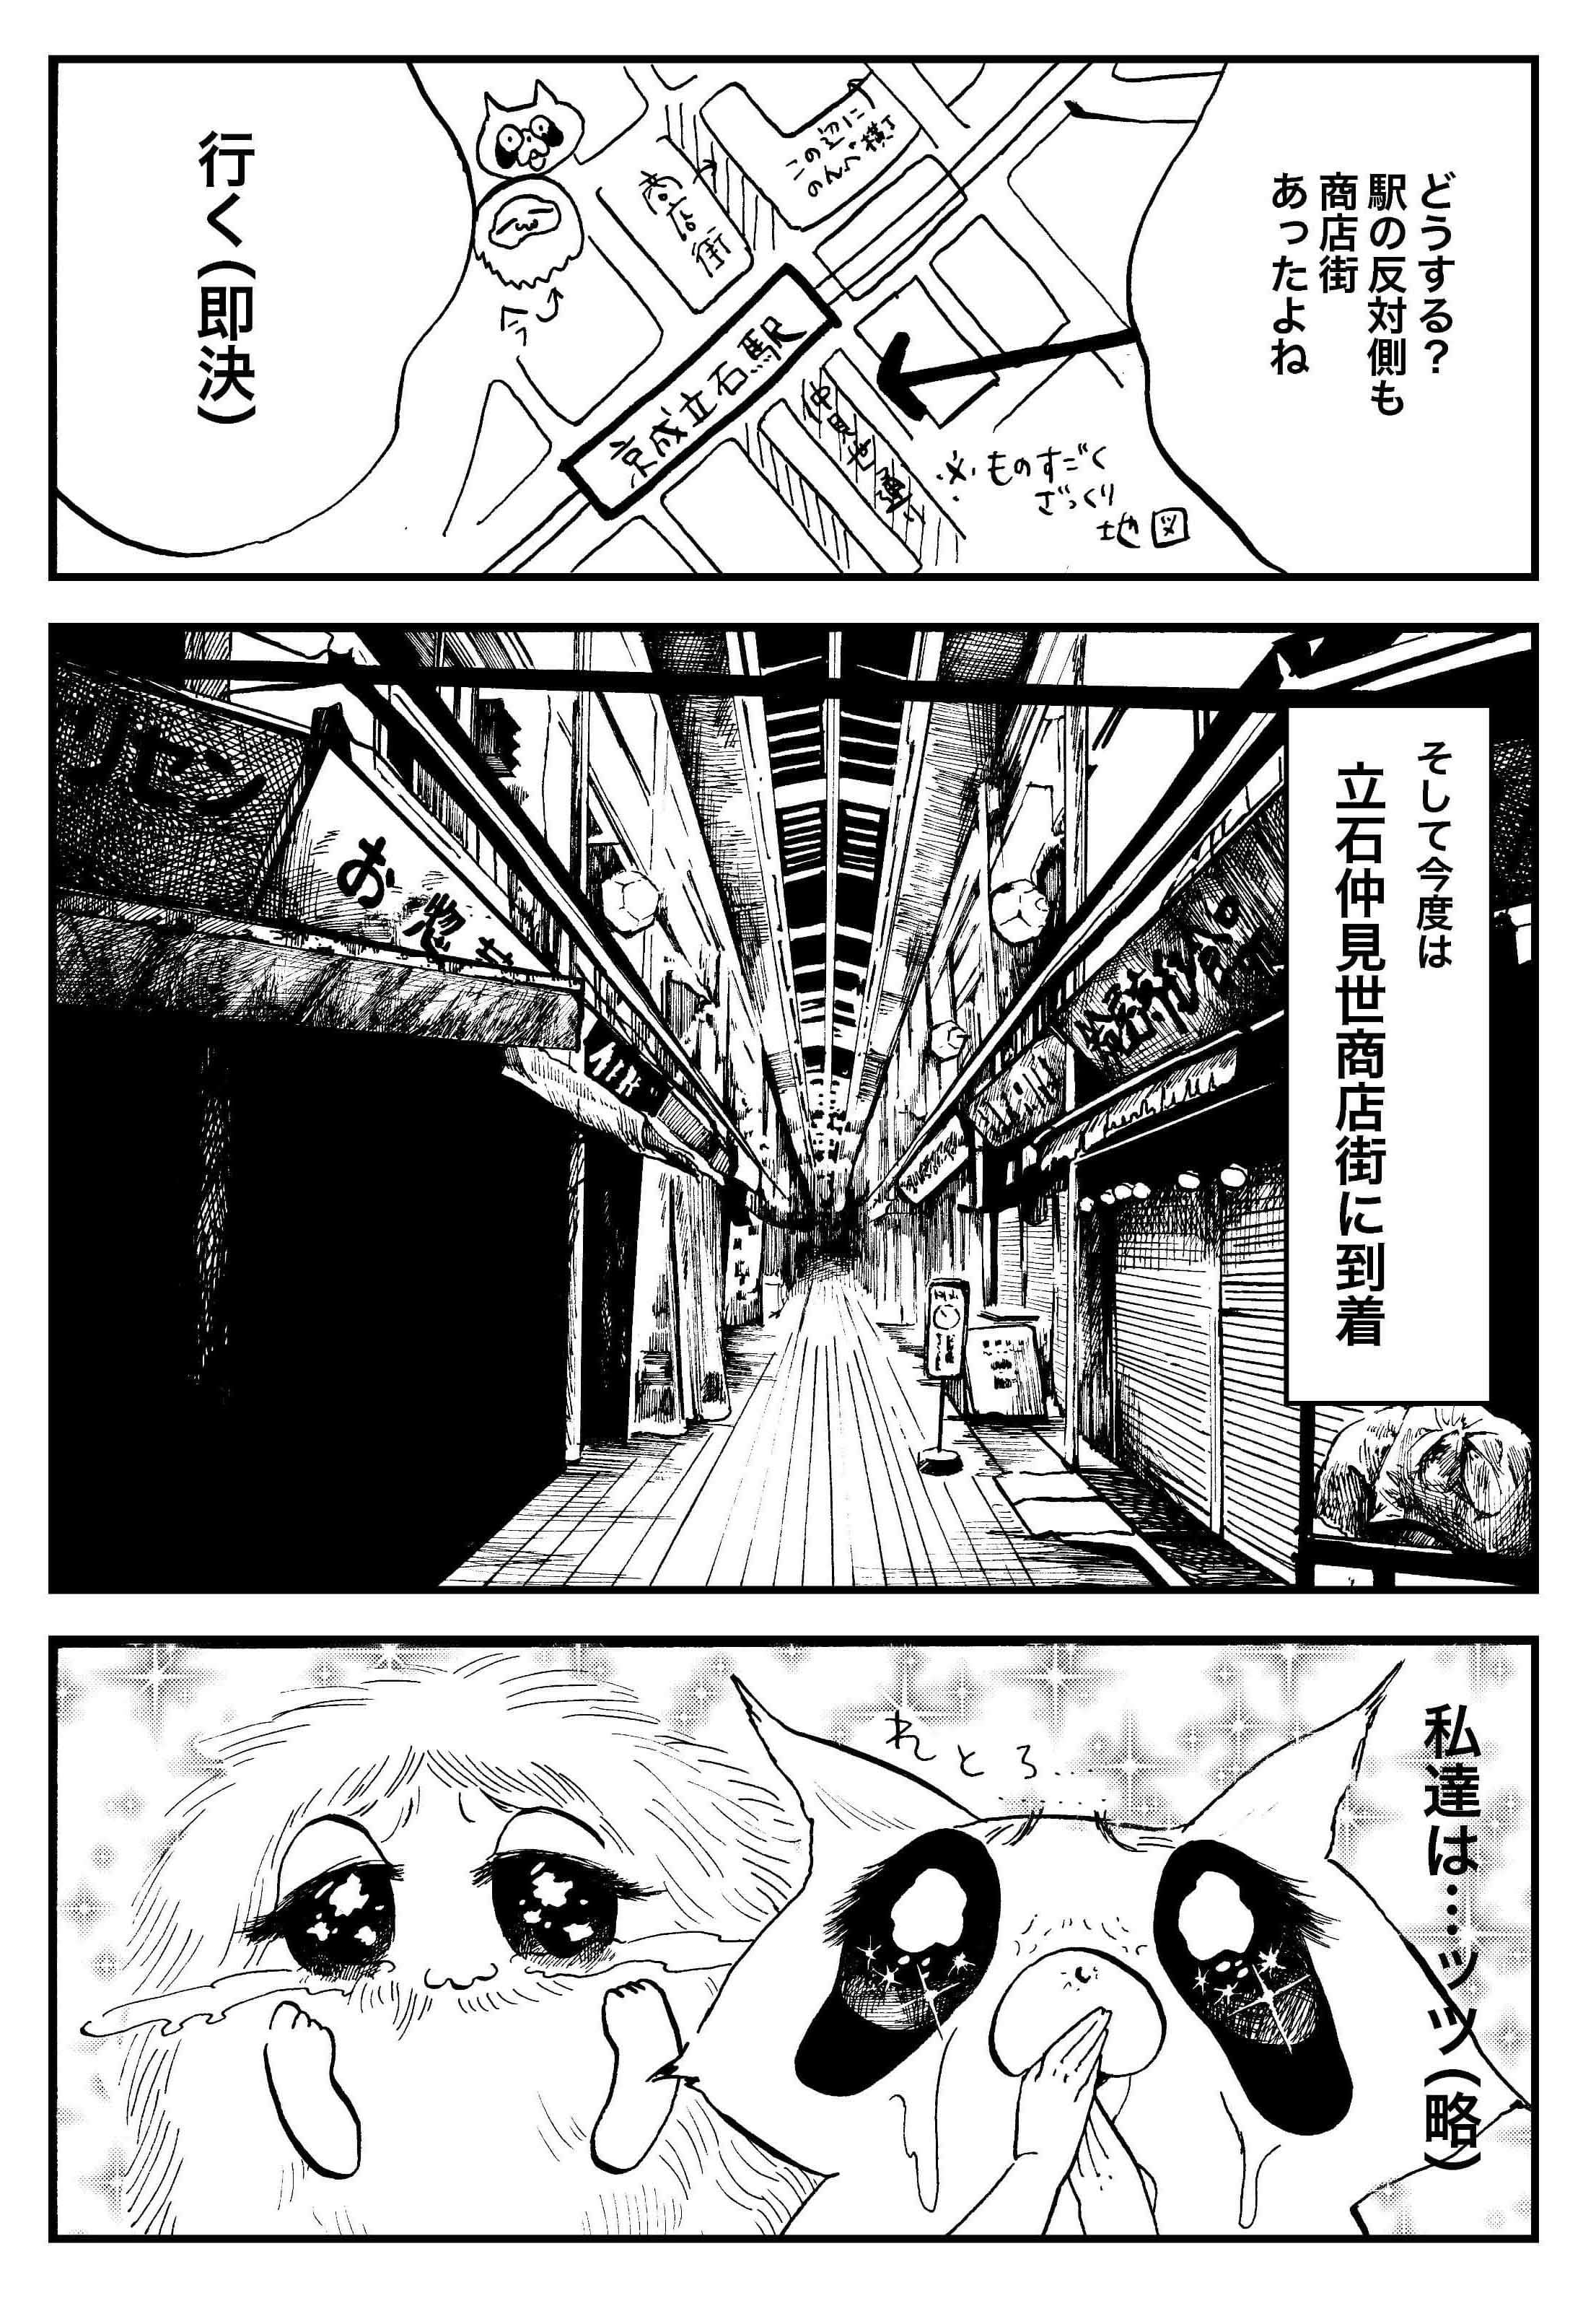 『夜活～夜の街を散歩した日記漫画～』／森凡 ７.jpg